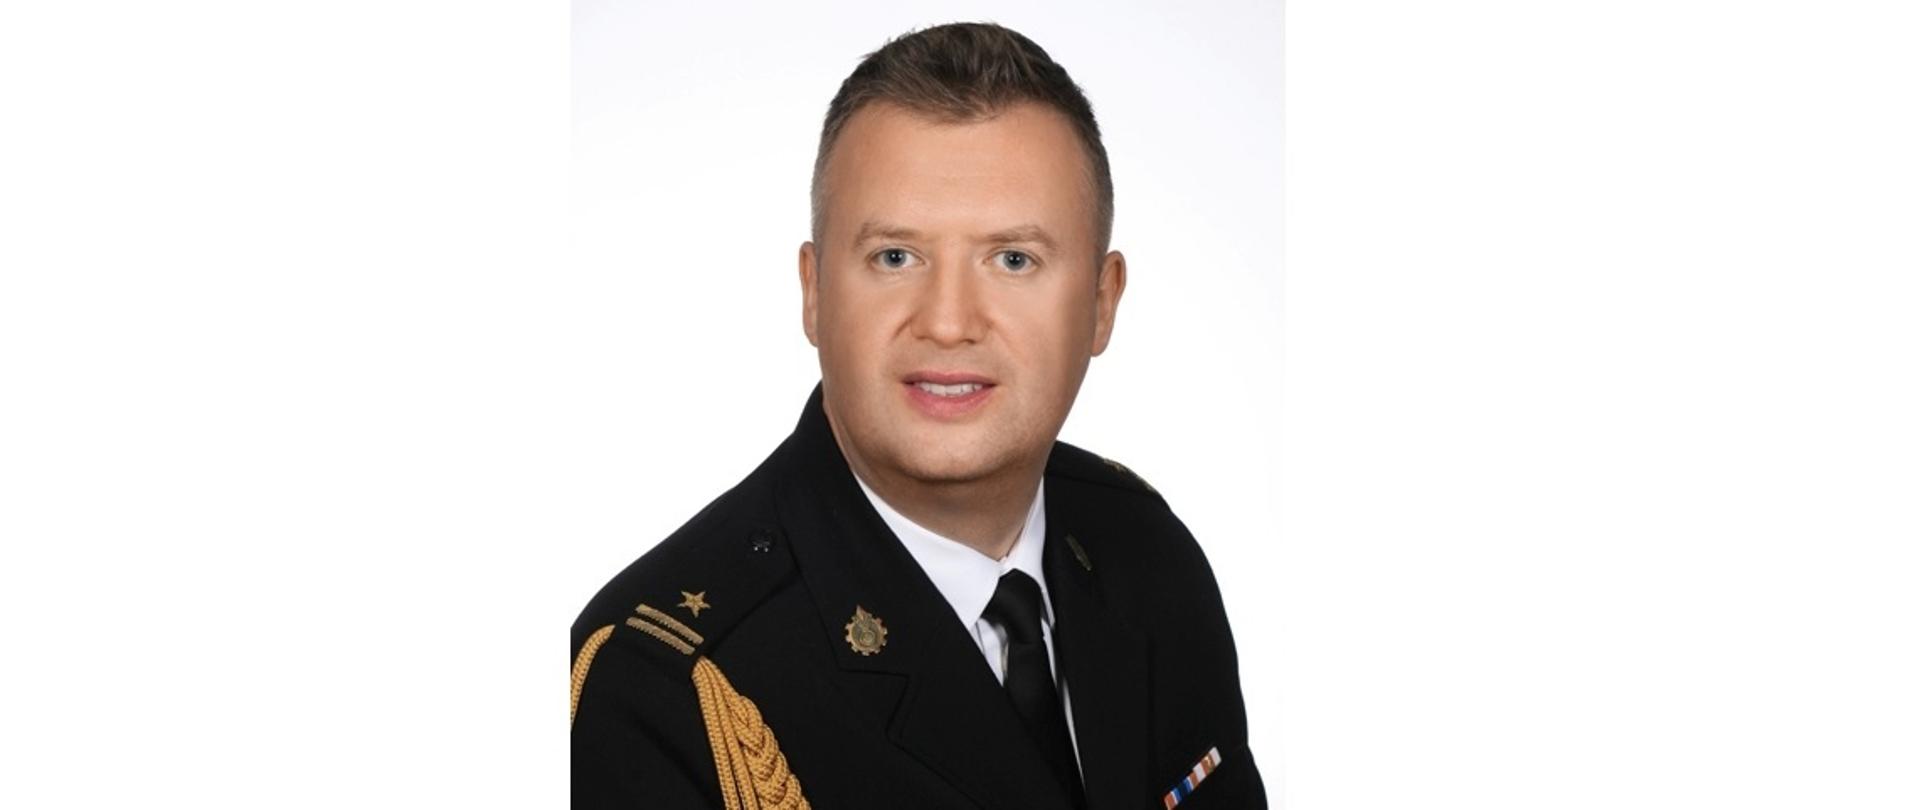 zdjęcie przedstawia Komendanta Powiatowego PSP w Bełchatowie mł. bryg. Adama Pstrokońskiego w mundurze wyjściowym na białym tle.